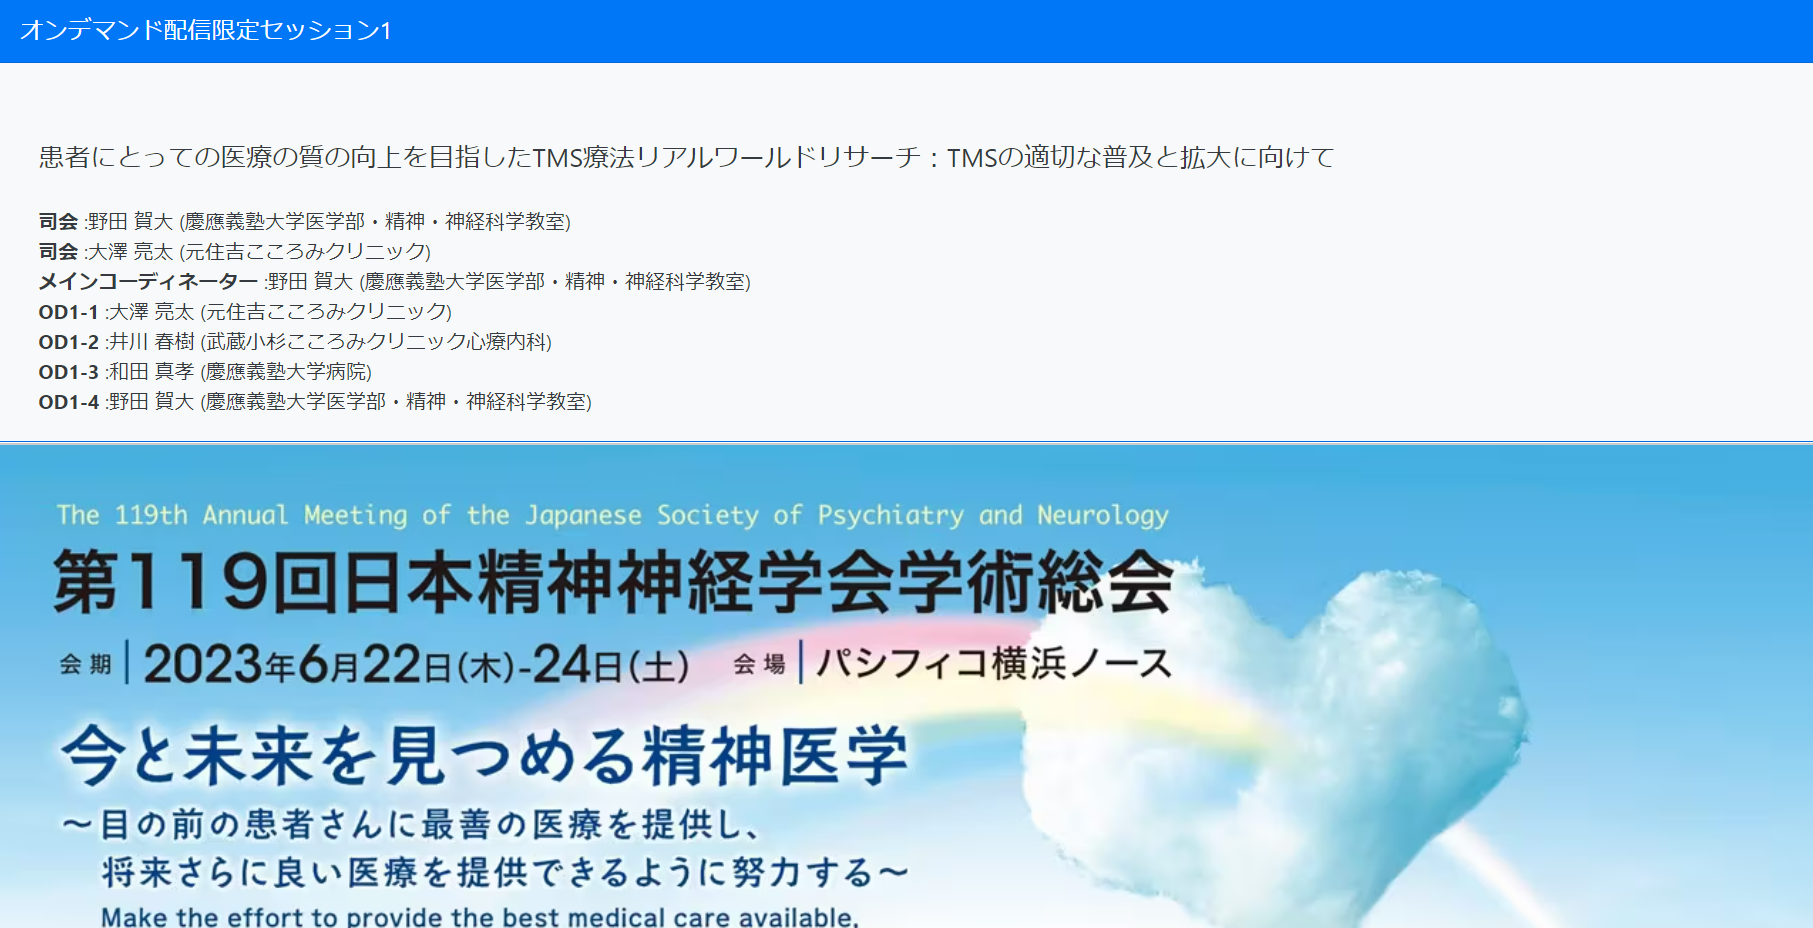 TMS治療オンライン限定での日本精神神経学会でのシンポジウムになります。